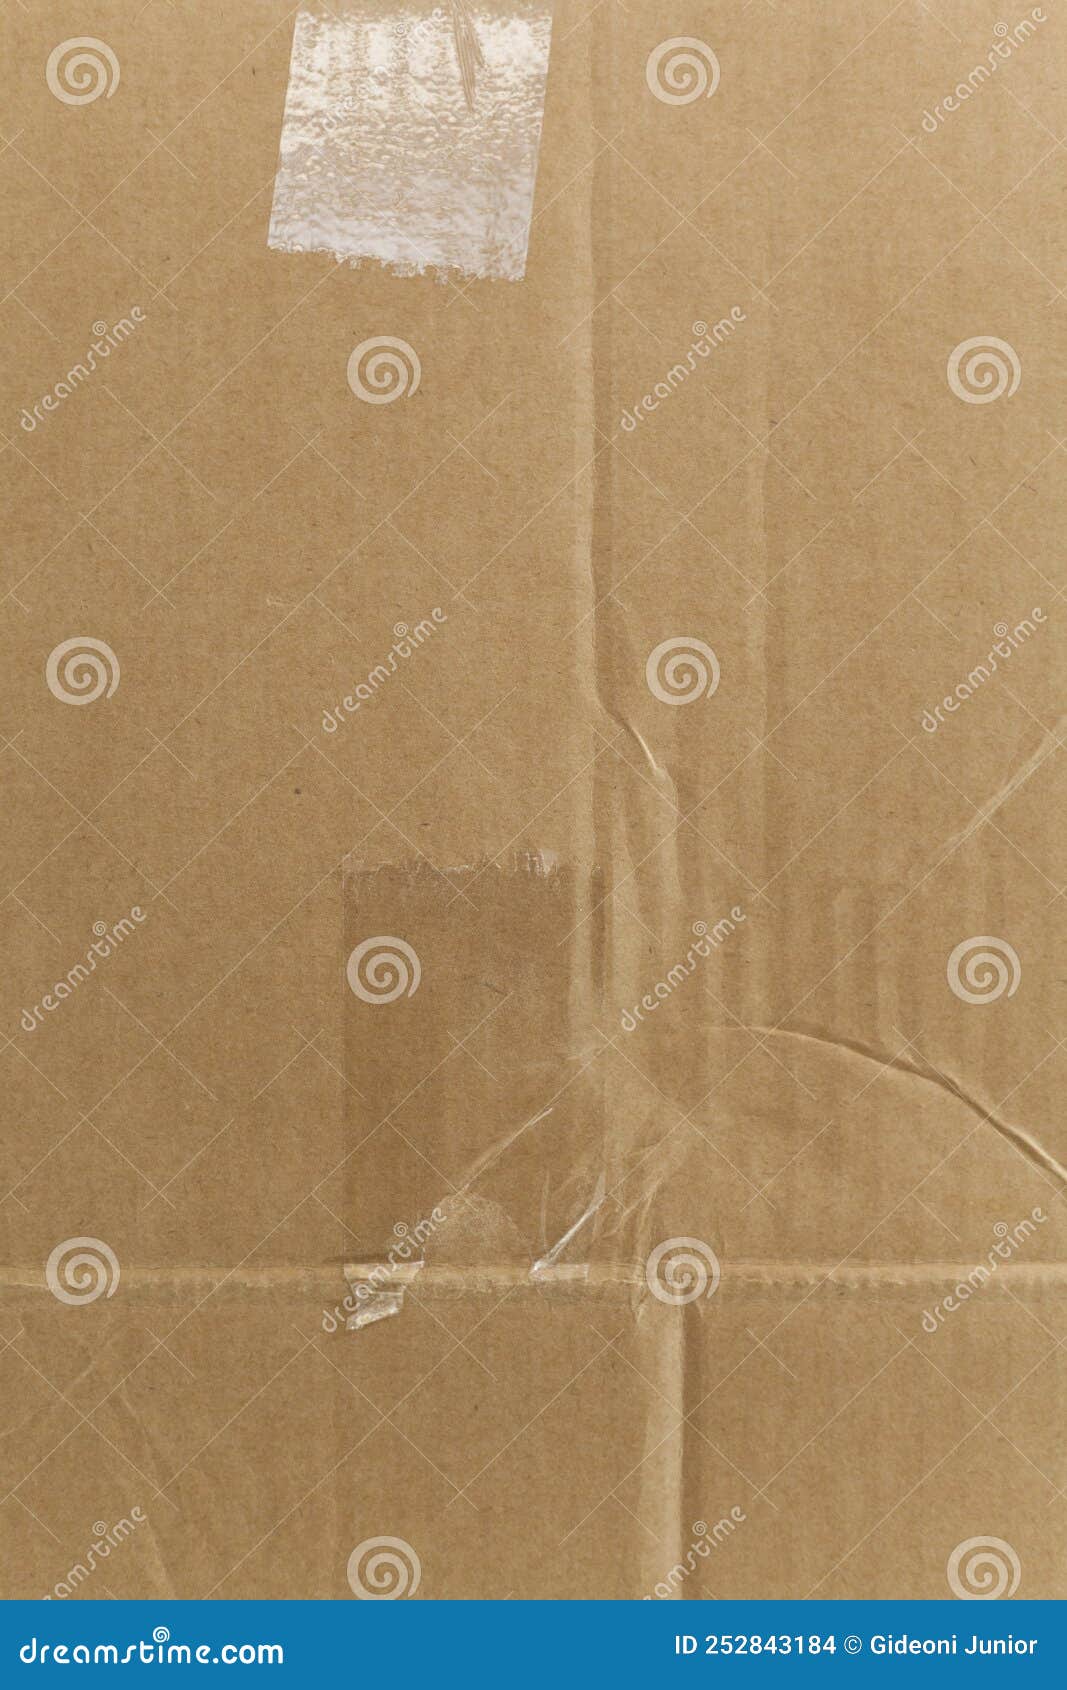 detail of an unwritten cardboard box.